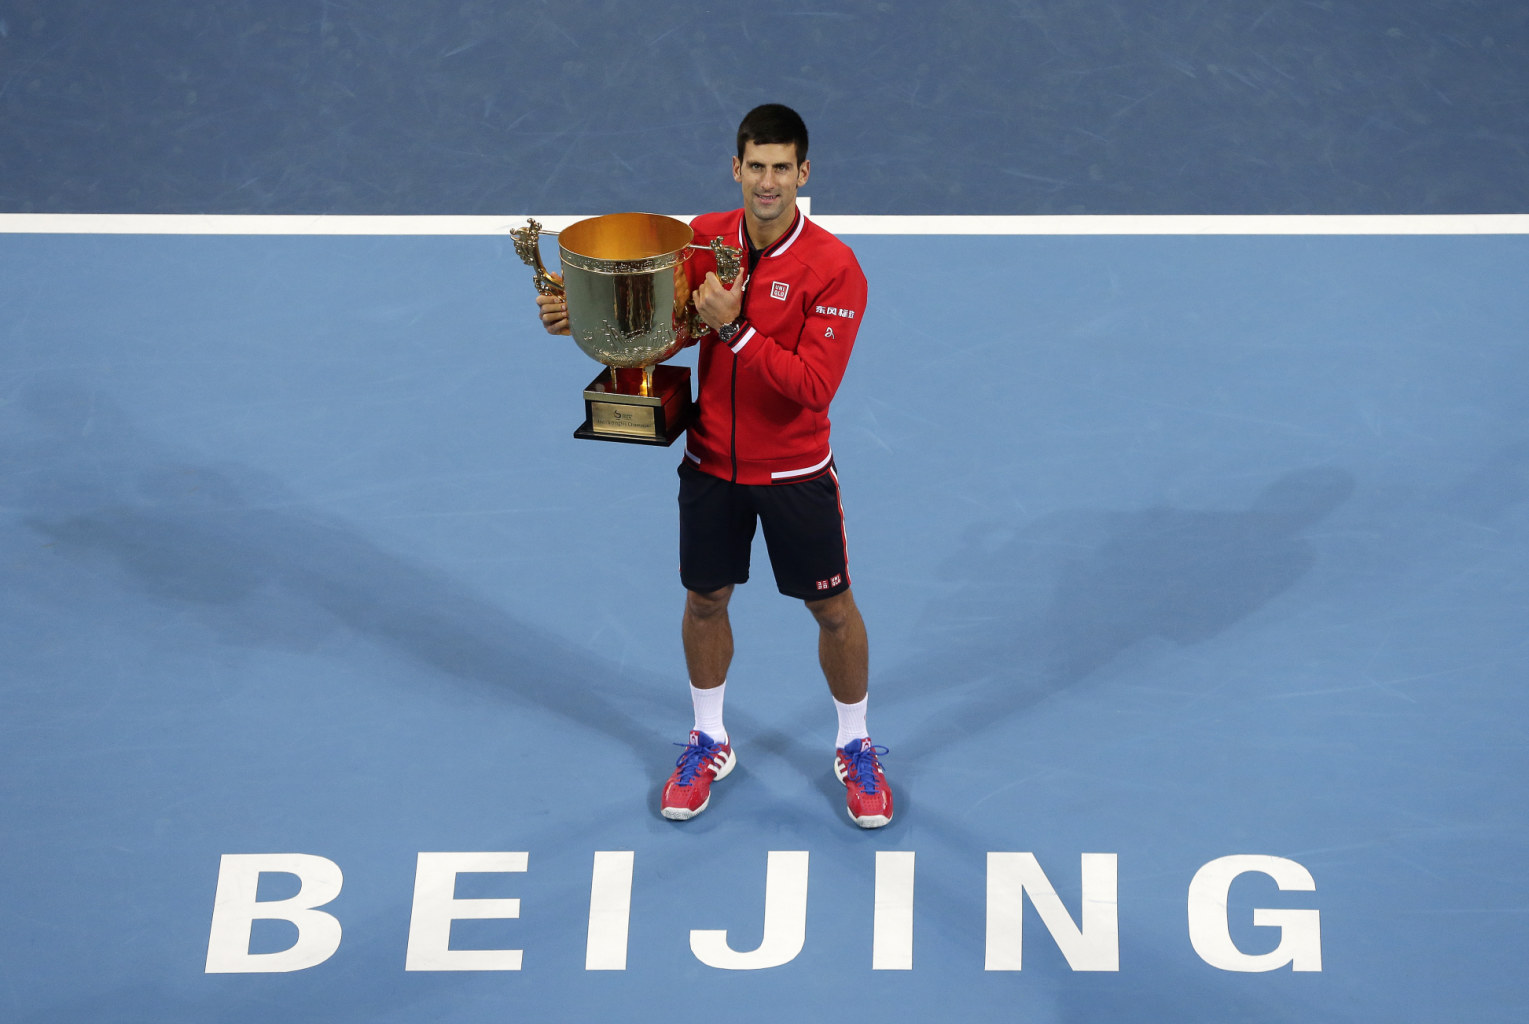 تنیس آزاد پکن؛ جوکوویچ نادال را شکست داد و قهرمان شد